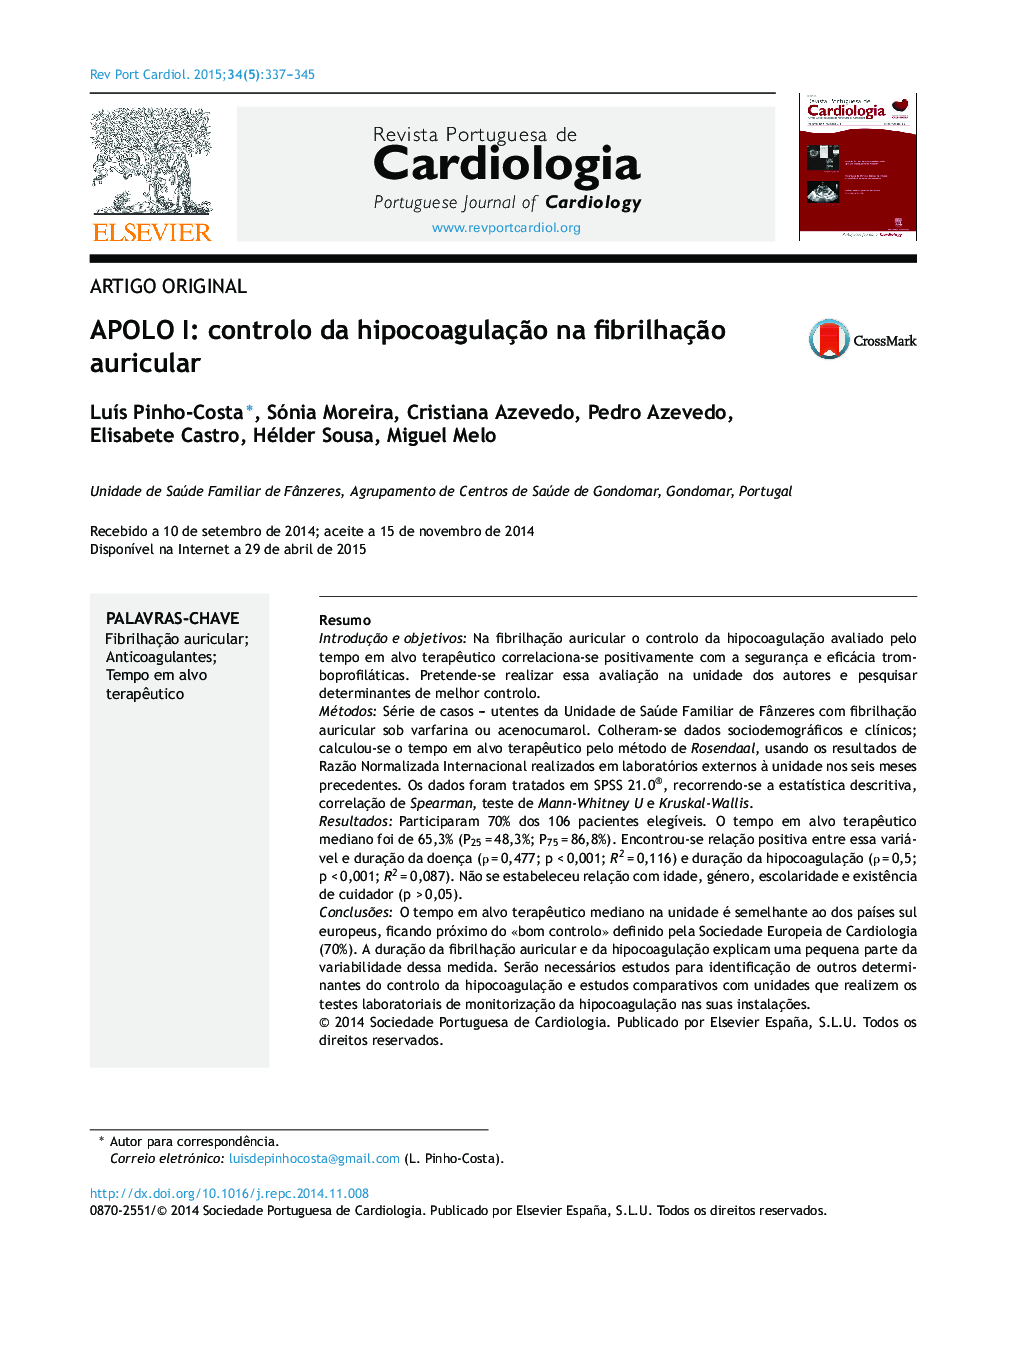 APOLO I: controlo da hipocoagulação na fibrilhação auricular